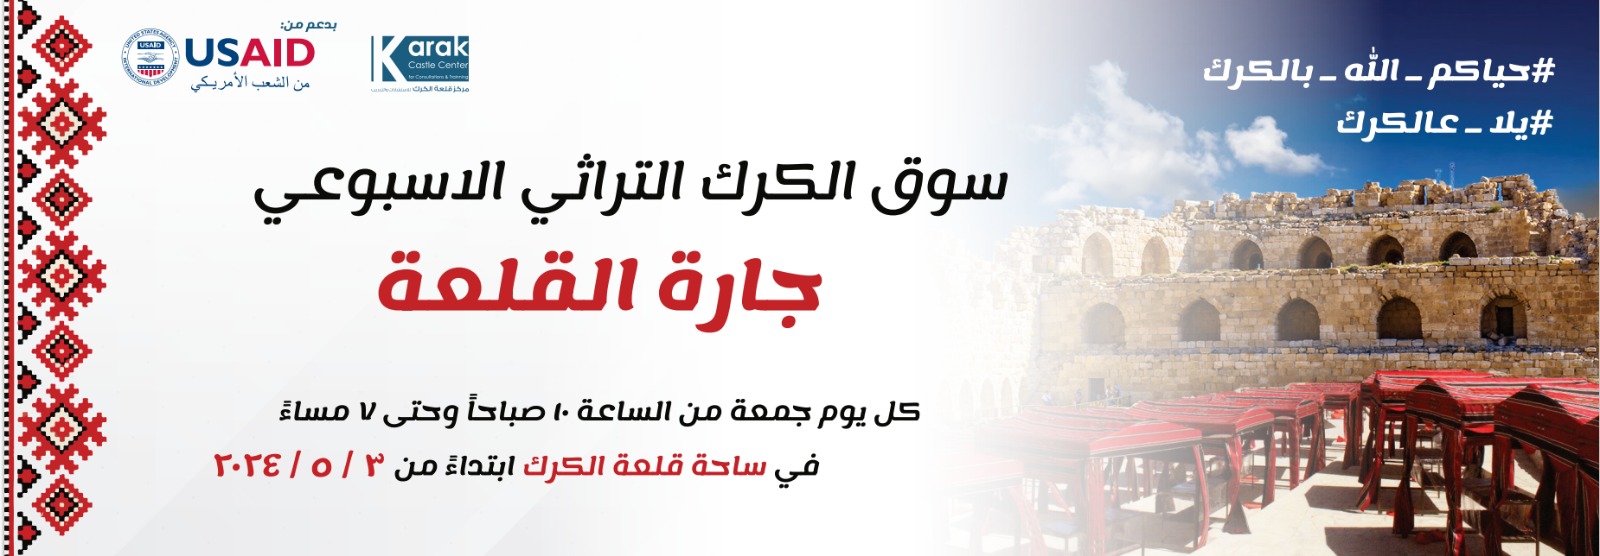 افتتاح سوق الكرك التراثي الأسبوعي (جارة القلعة) الجمعة القادمة 